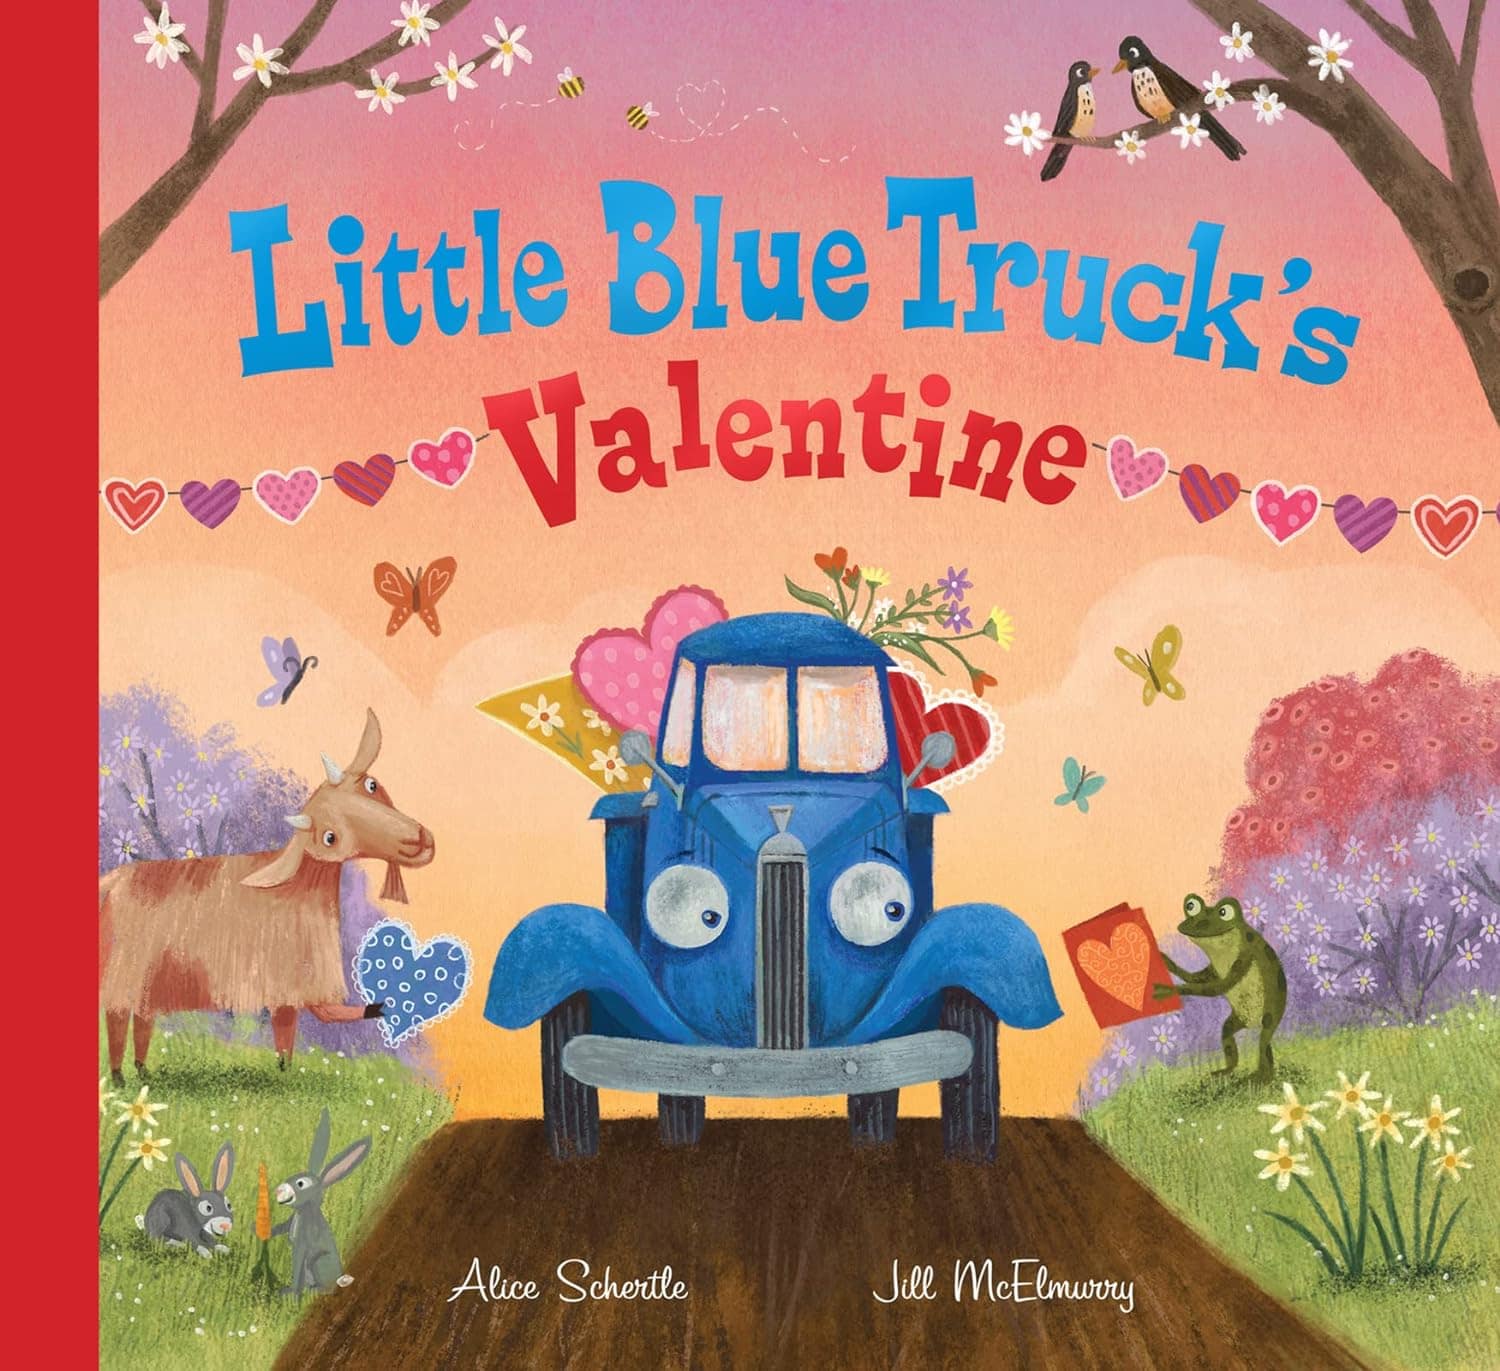 "Little Blue Truck Valentine" by Alice Schertle